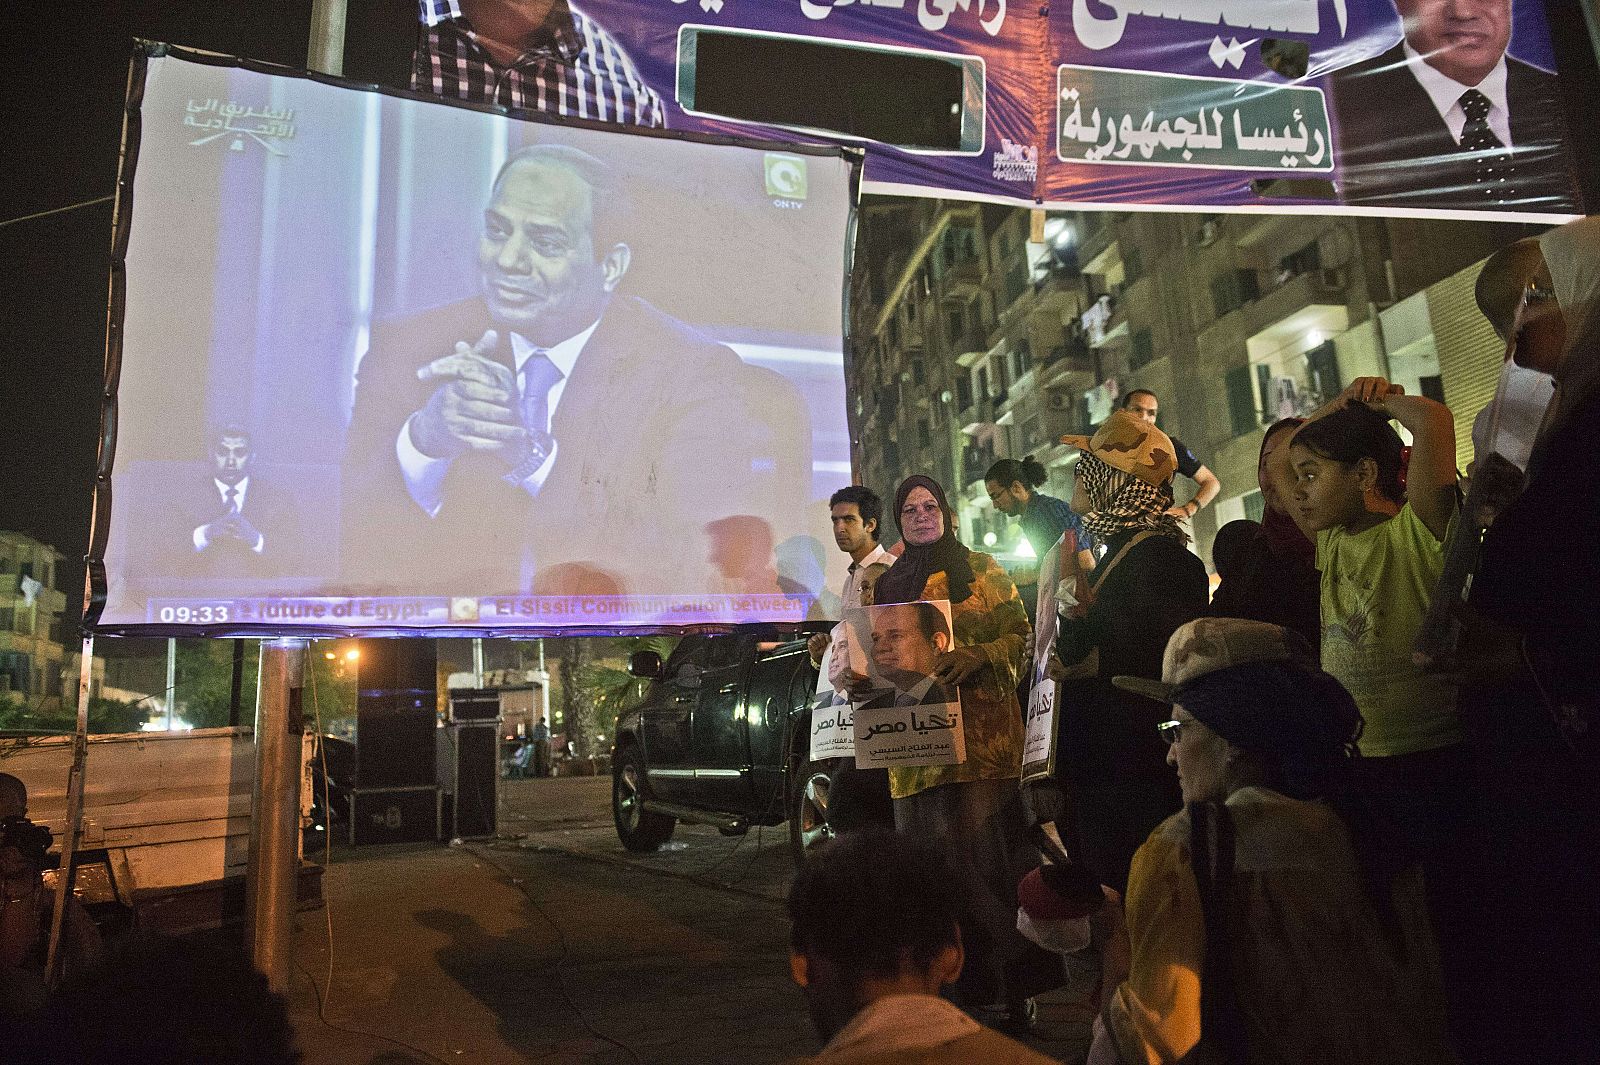 Los egipcios han seguido la primera entrevista del exjefe del Ejército y candidato a las presidenciales en Egipto, Abdel Fattah al Sisis, en una pantalla gigante en el centro de El Cairo.